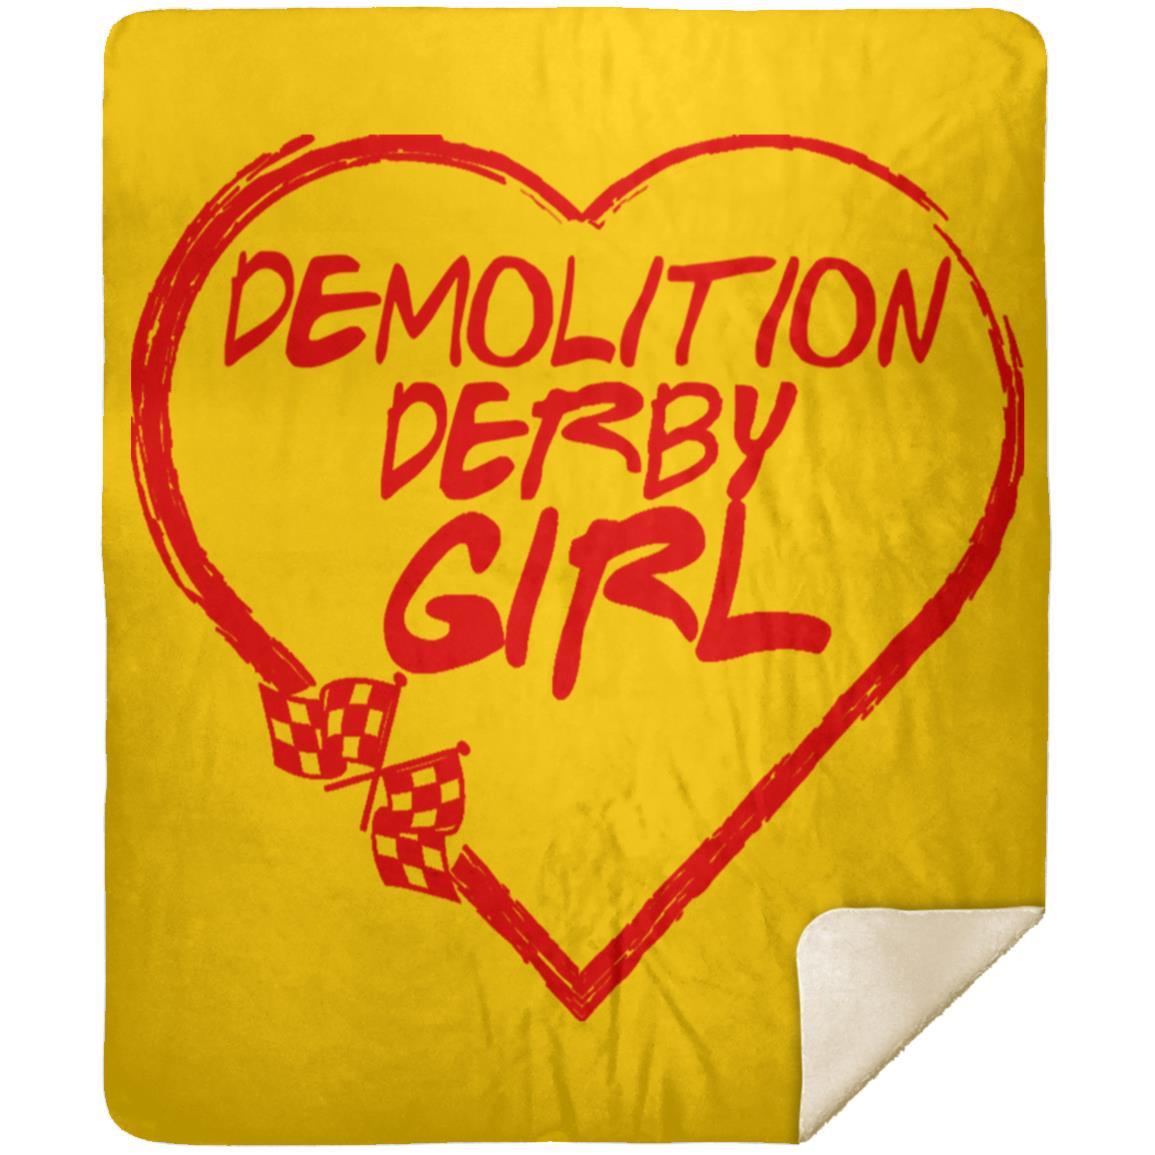 Demolition Derby Girl Heart Premium Mink Sherpa Blanket 50x60